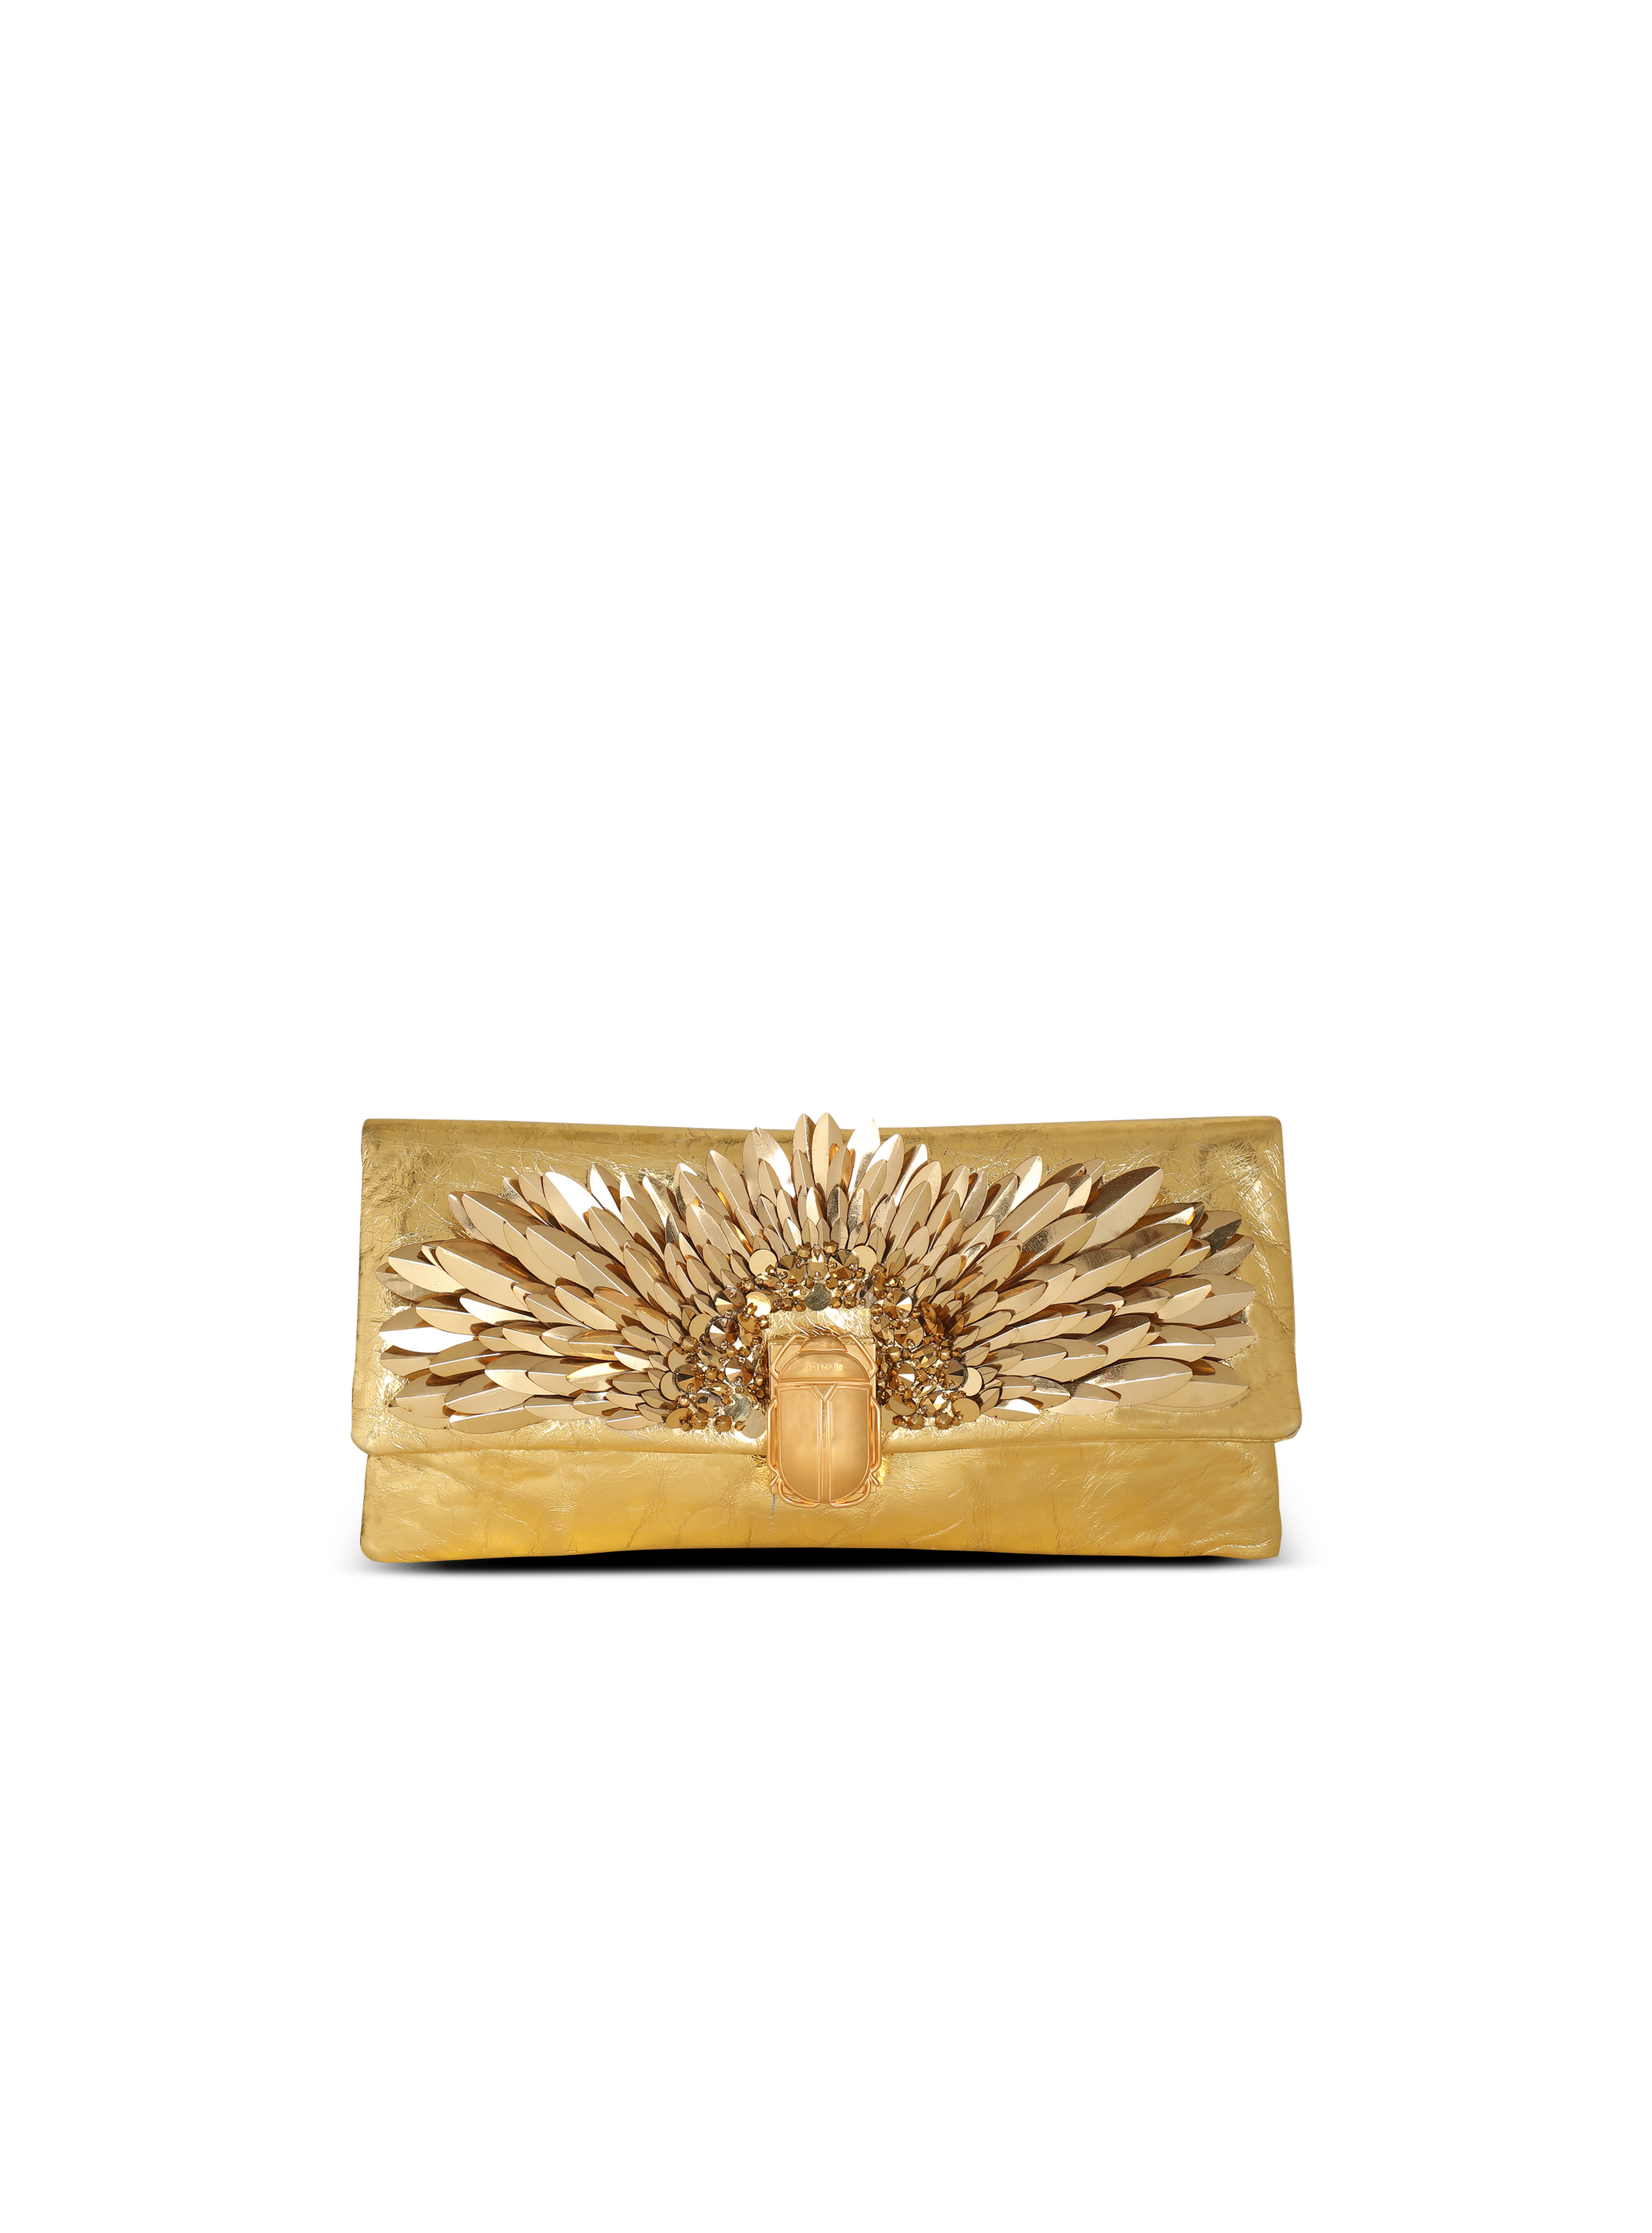 1945光滑柔软皮革刺绣手拿包, gold